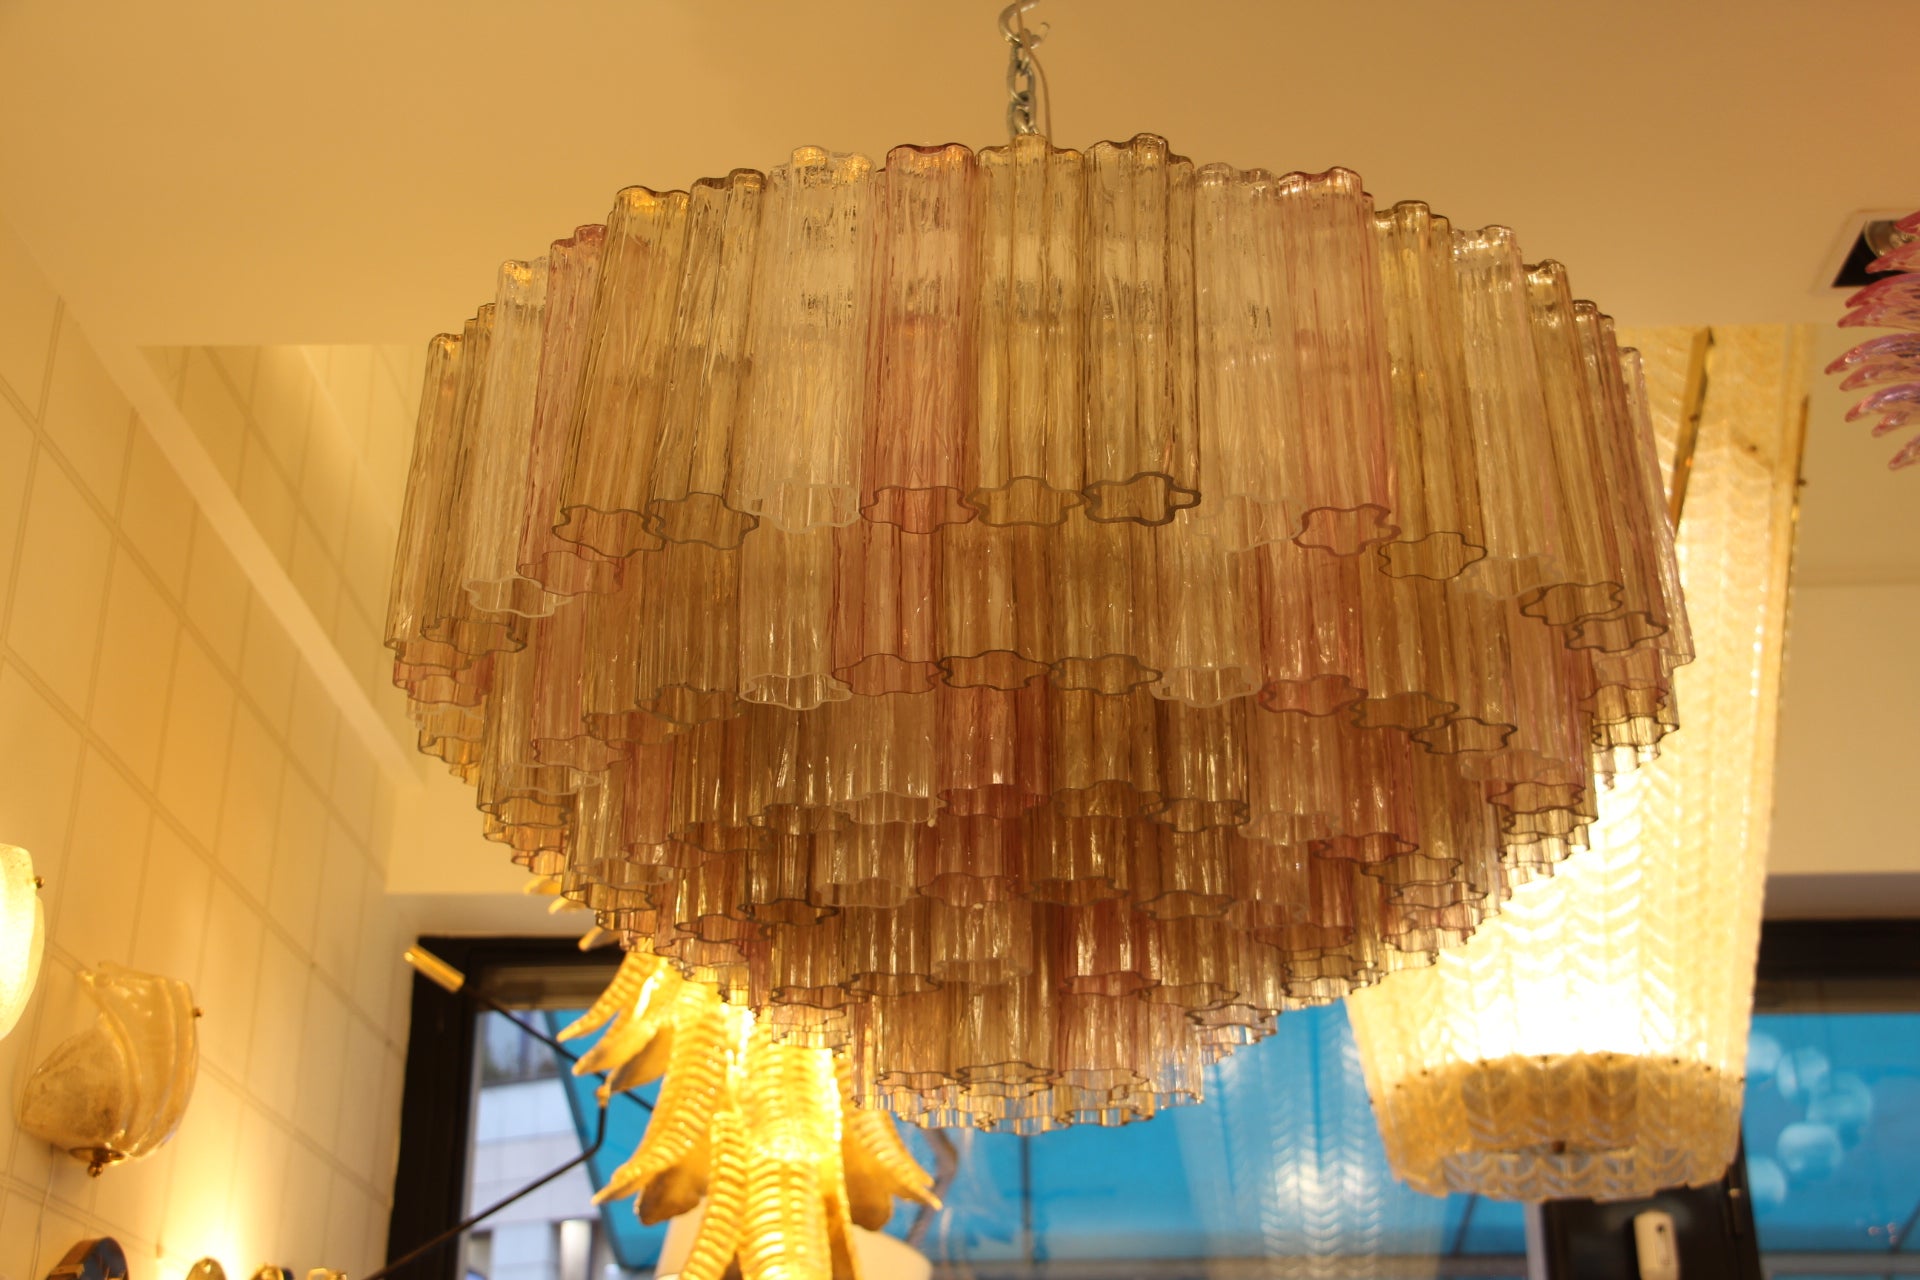 Ce lustre en verre de Murano de style Venini est magnifique. Ses couleurs magnifiques et très douces sont tout à fait uniques. Ses tubes de verre ont des formes de fleurs. Vu d'en dessous, on dirait un champ de fleurs. Chaque pièce de verre a été